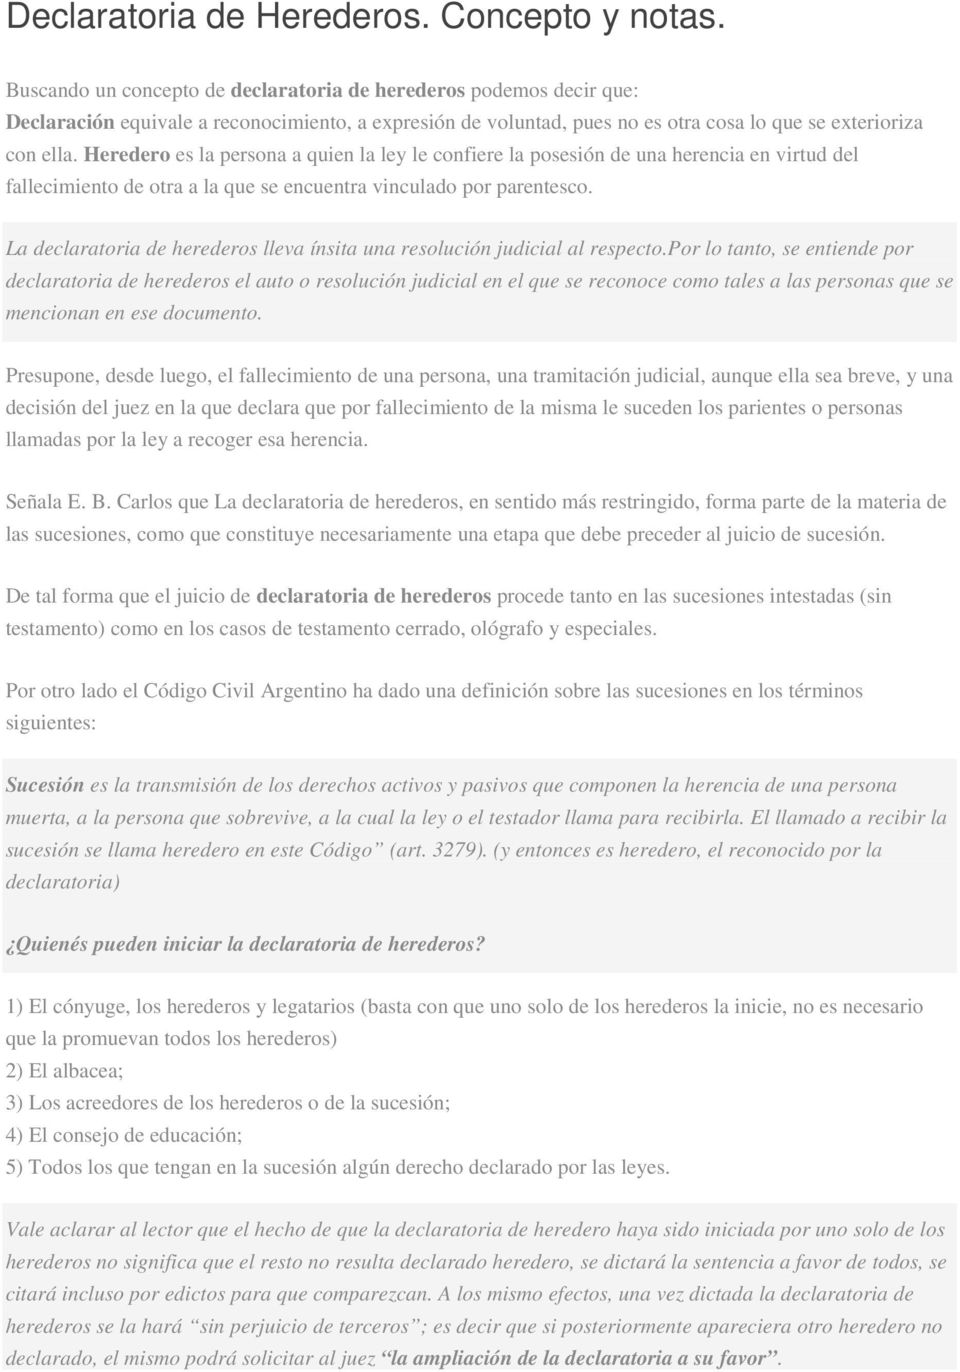 Declaratoria de Herederos. Concepto y notas. - PDF Descargar libre